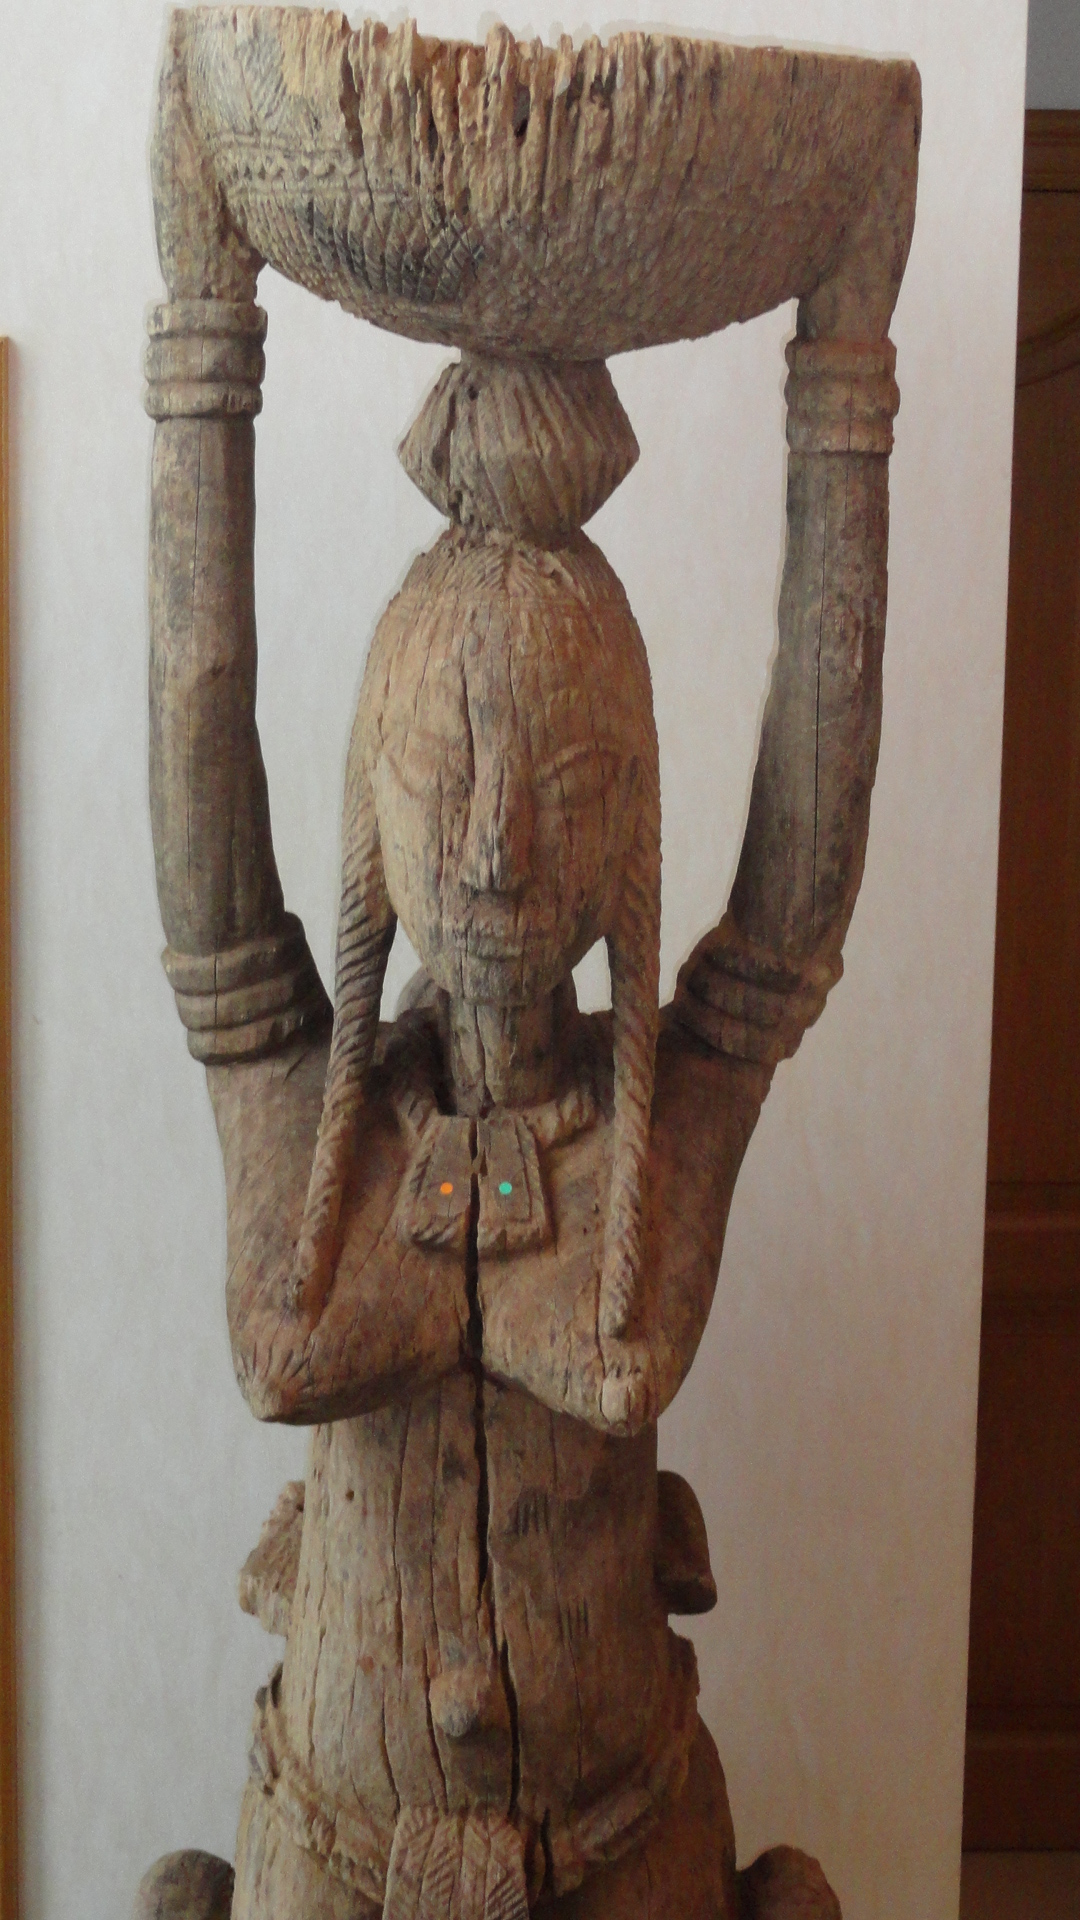 Bambara ( gr.   Guandusu), d`afrique : Mali, statuette Bambara ( gr.   Guandusu), masque ancien africain Bambara ( gr.   Guandusu), art du Mali - Art Africain, collection privées Belgique. Statue africaine de la tribu des Bambara ( gr.   Guandusu), provenant du Mali, 1697 Statue Guandusu,l